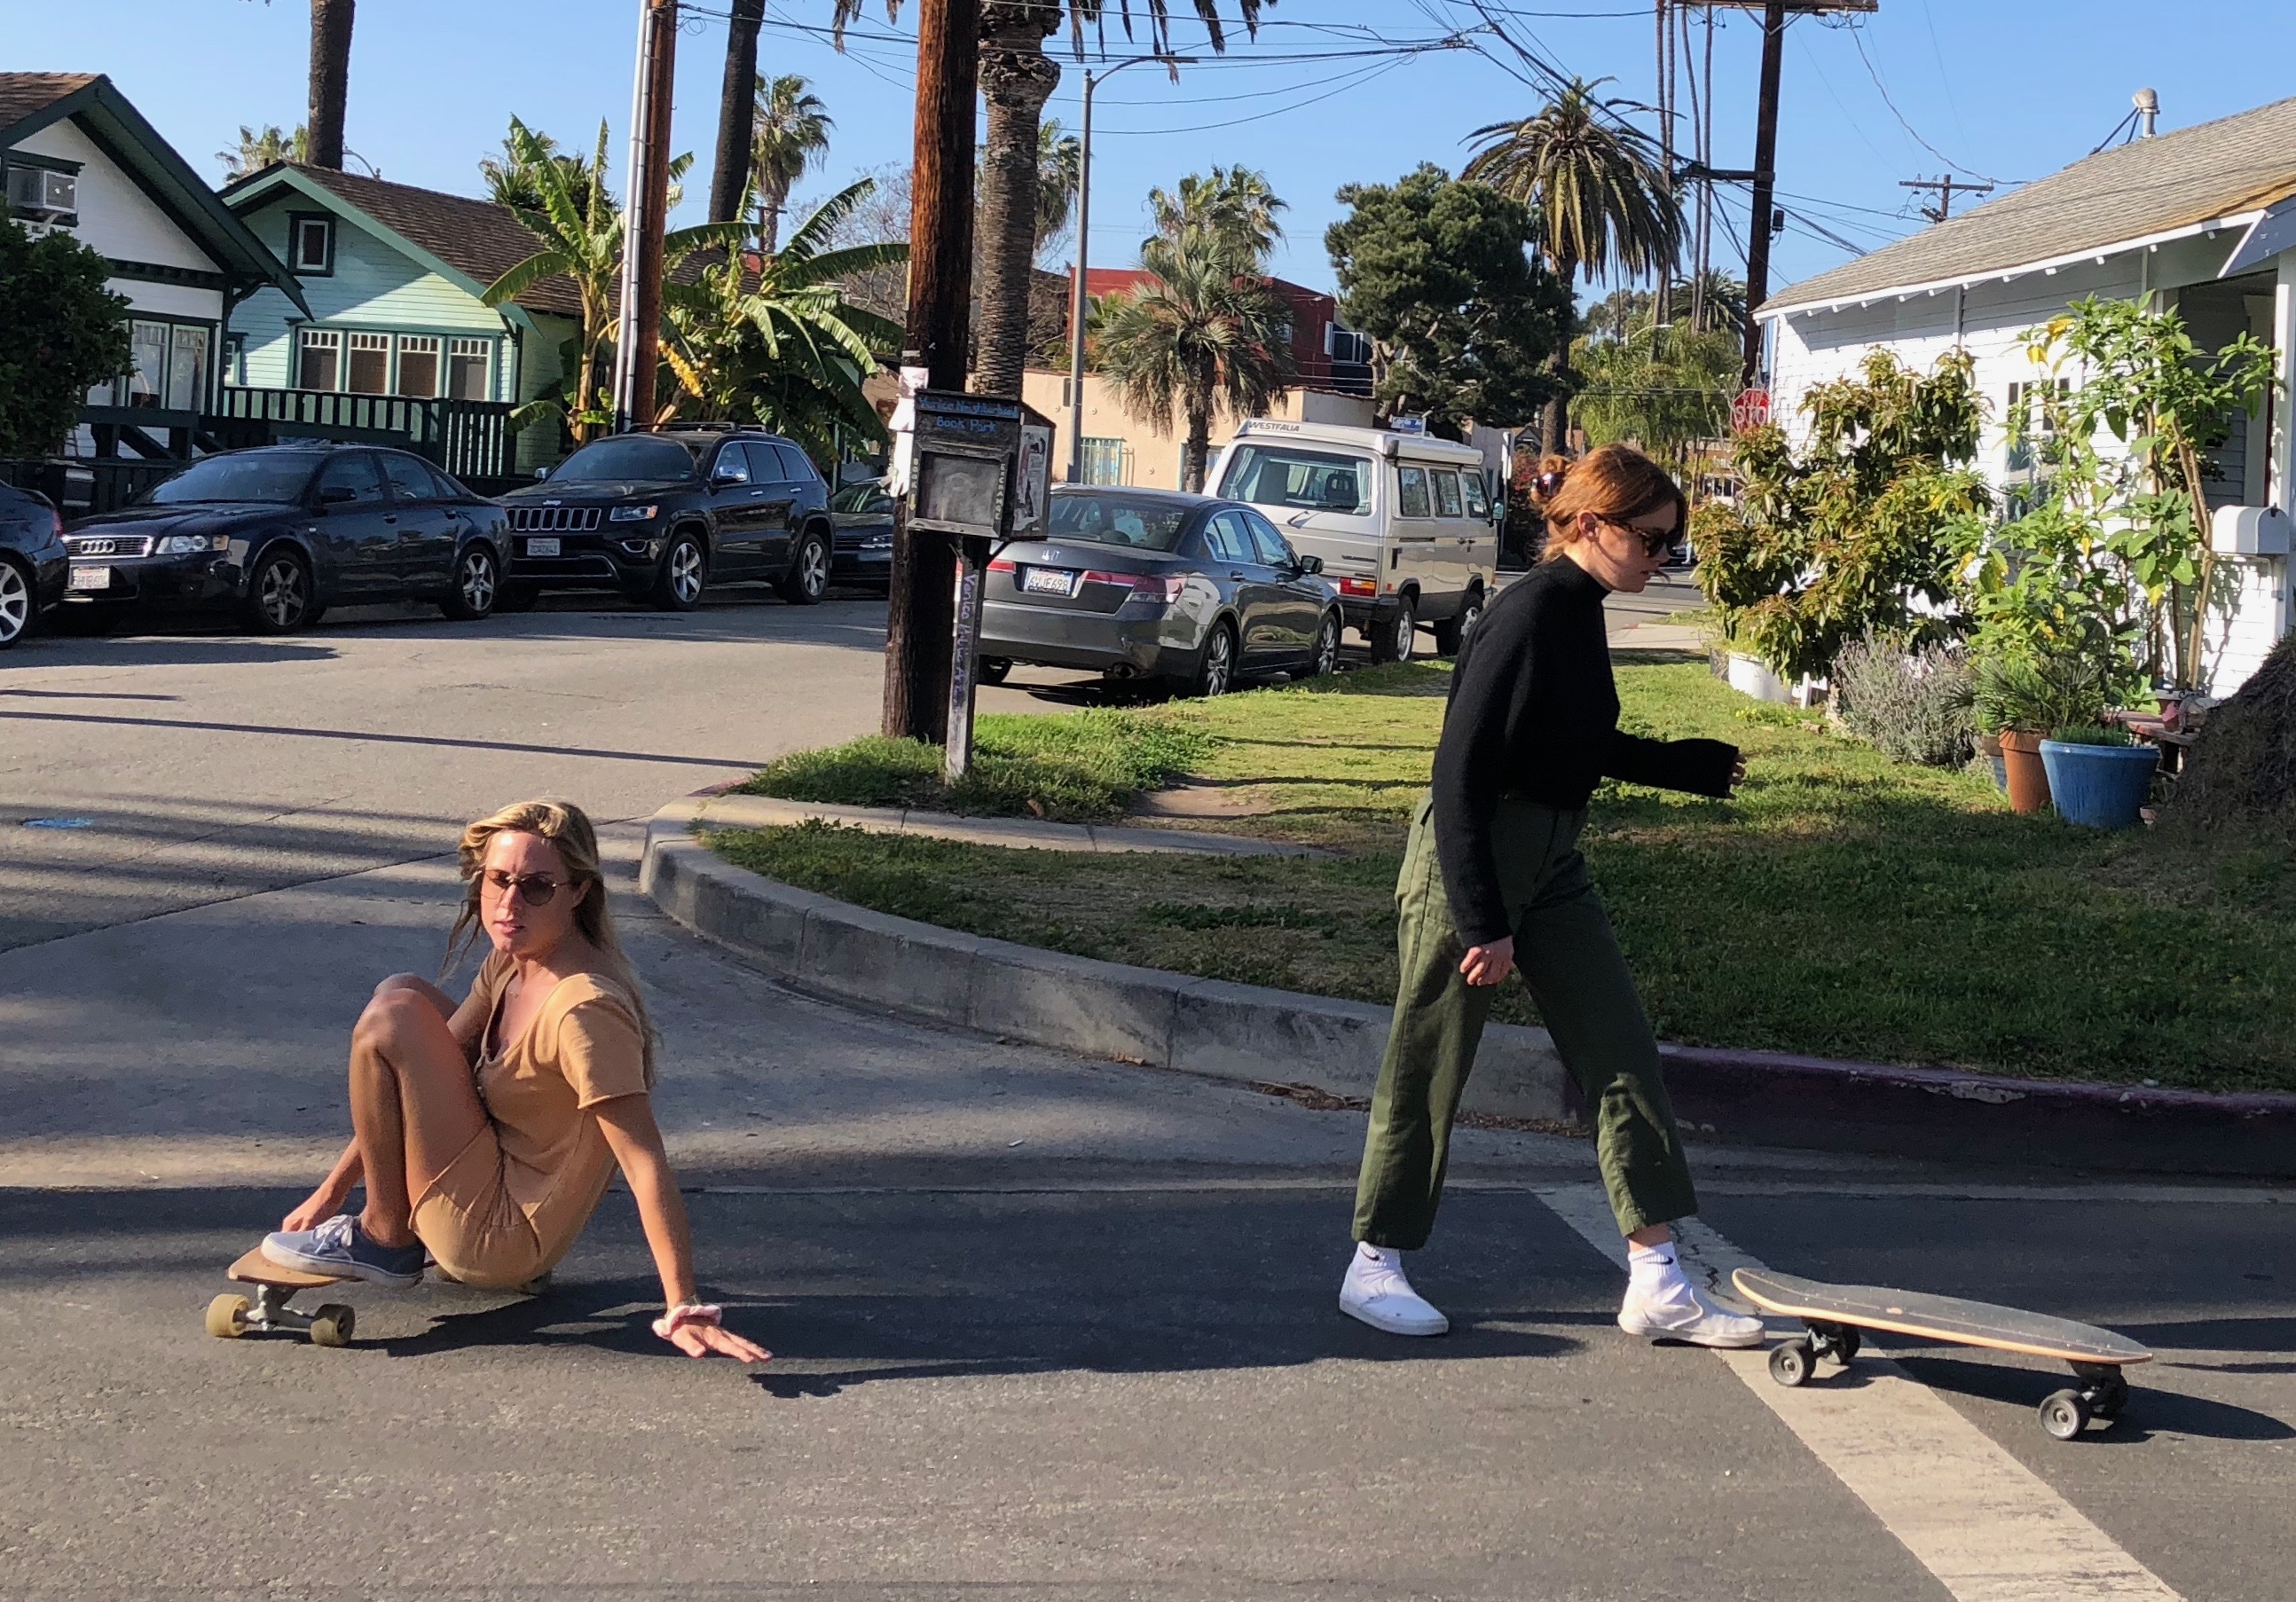 Girlswirl skateboarder doing tricks in street